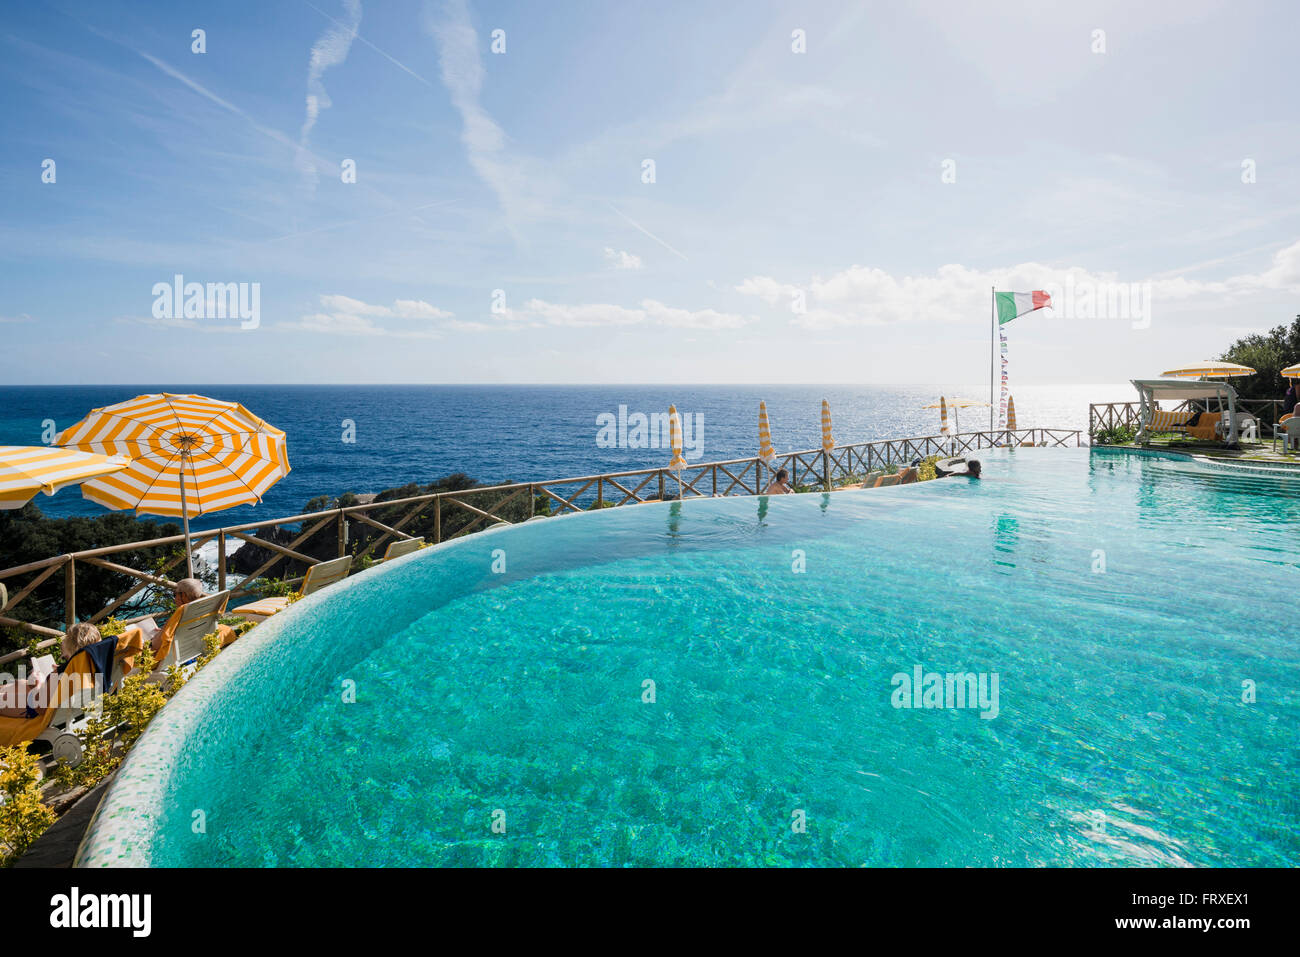 Piscine d'un hôtel, Monterosso al Mare, Cinque Terre, La Spezia, ligurie, italie Banque D'Images